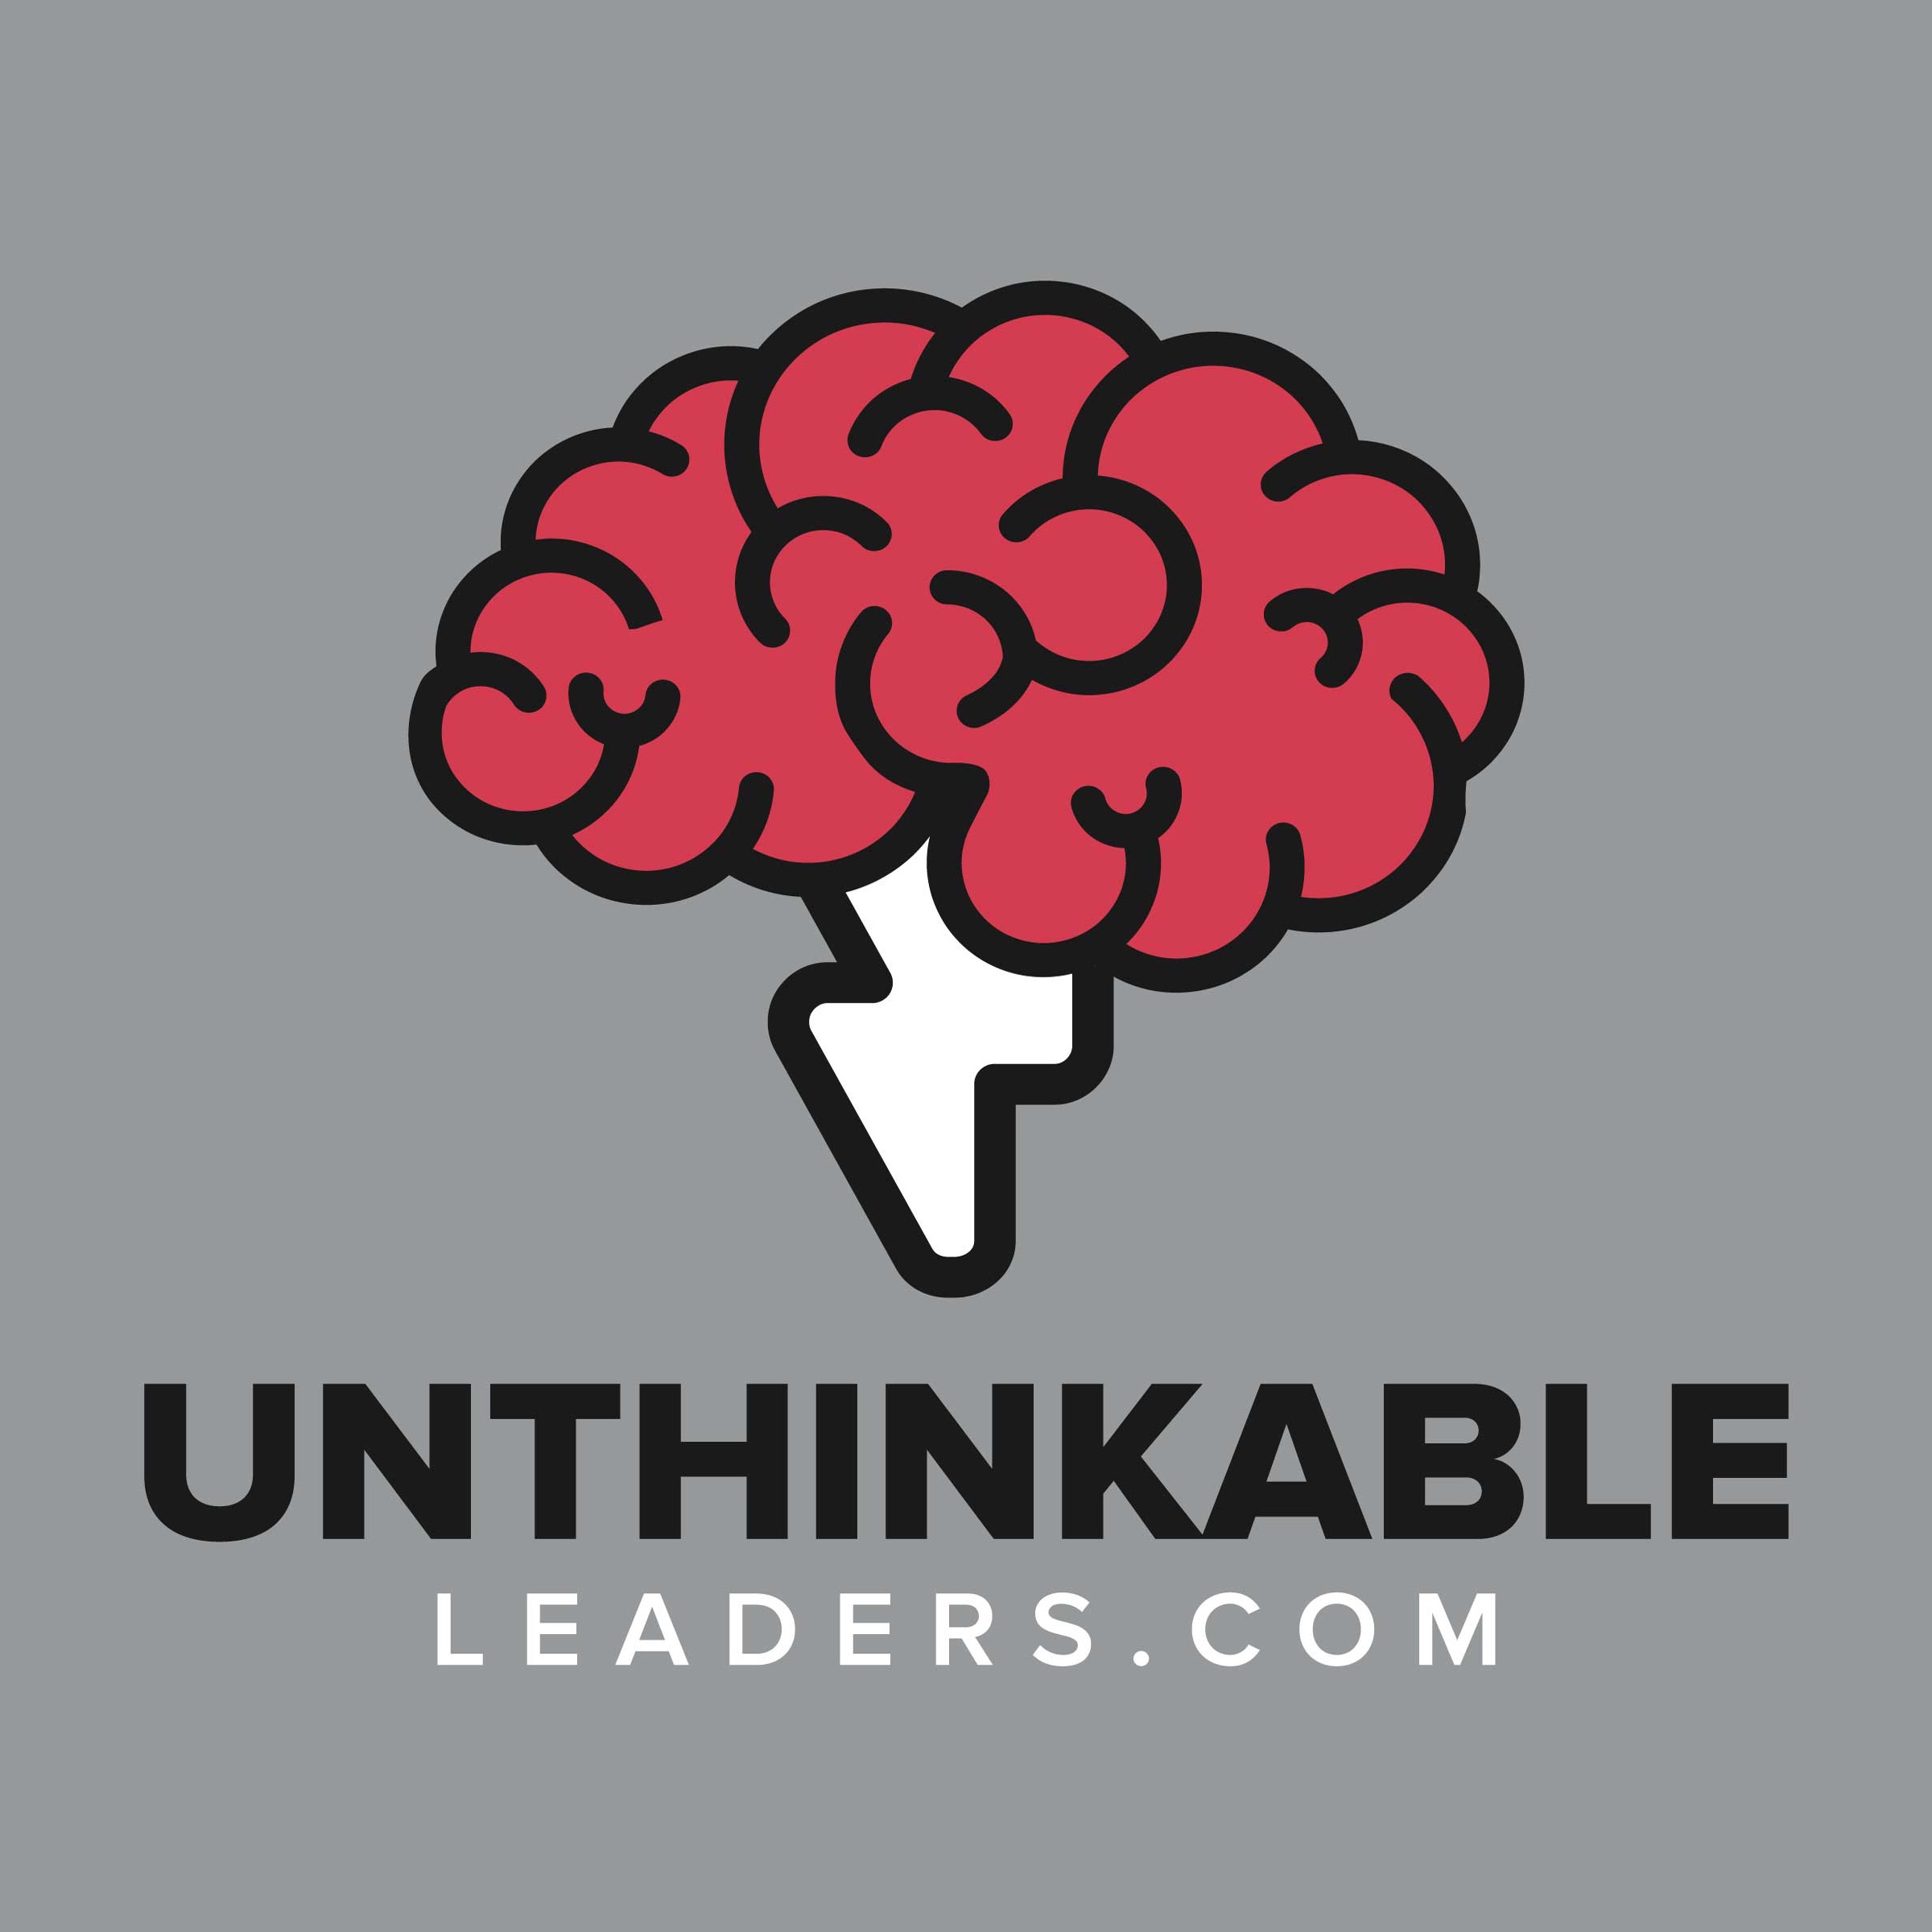 Unthinkable Leaders